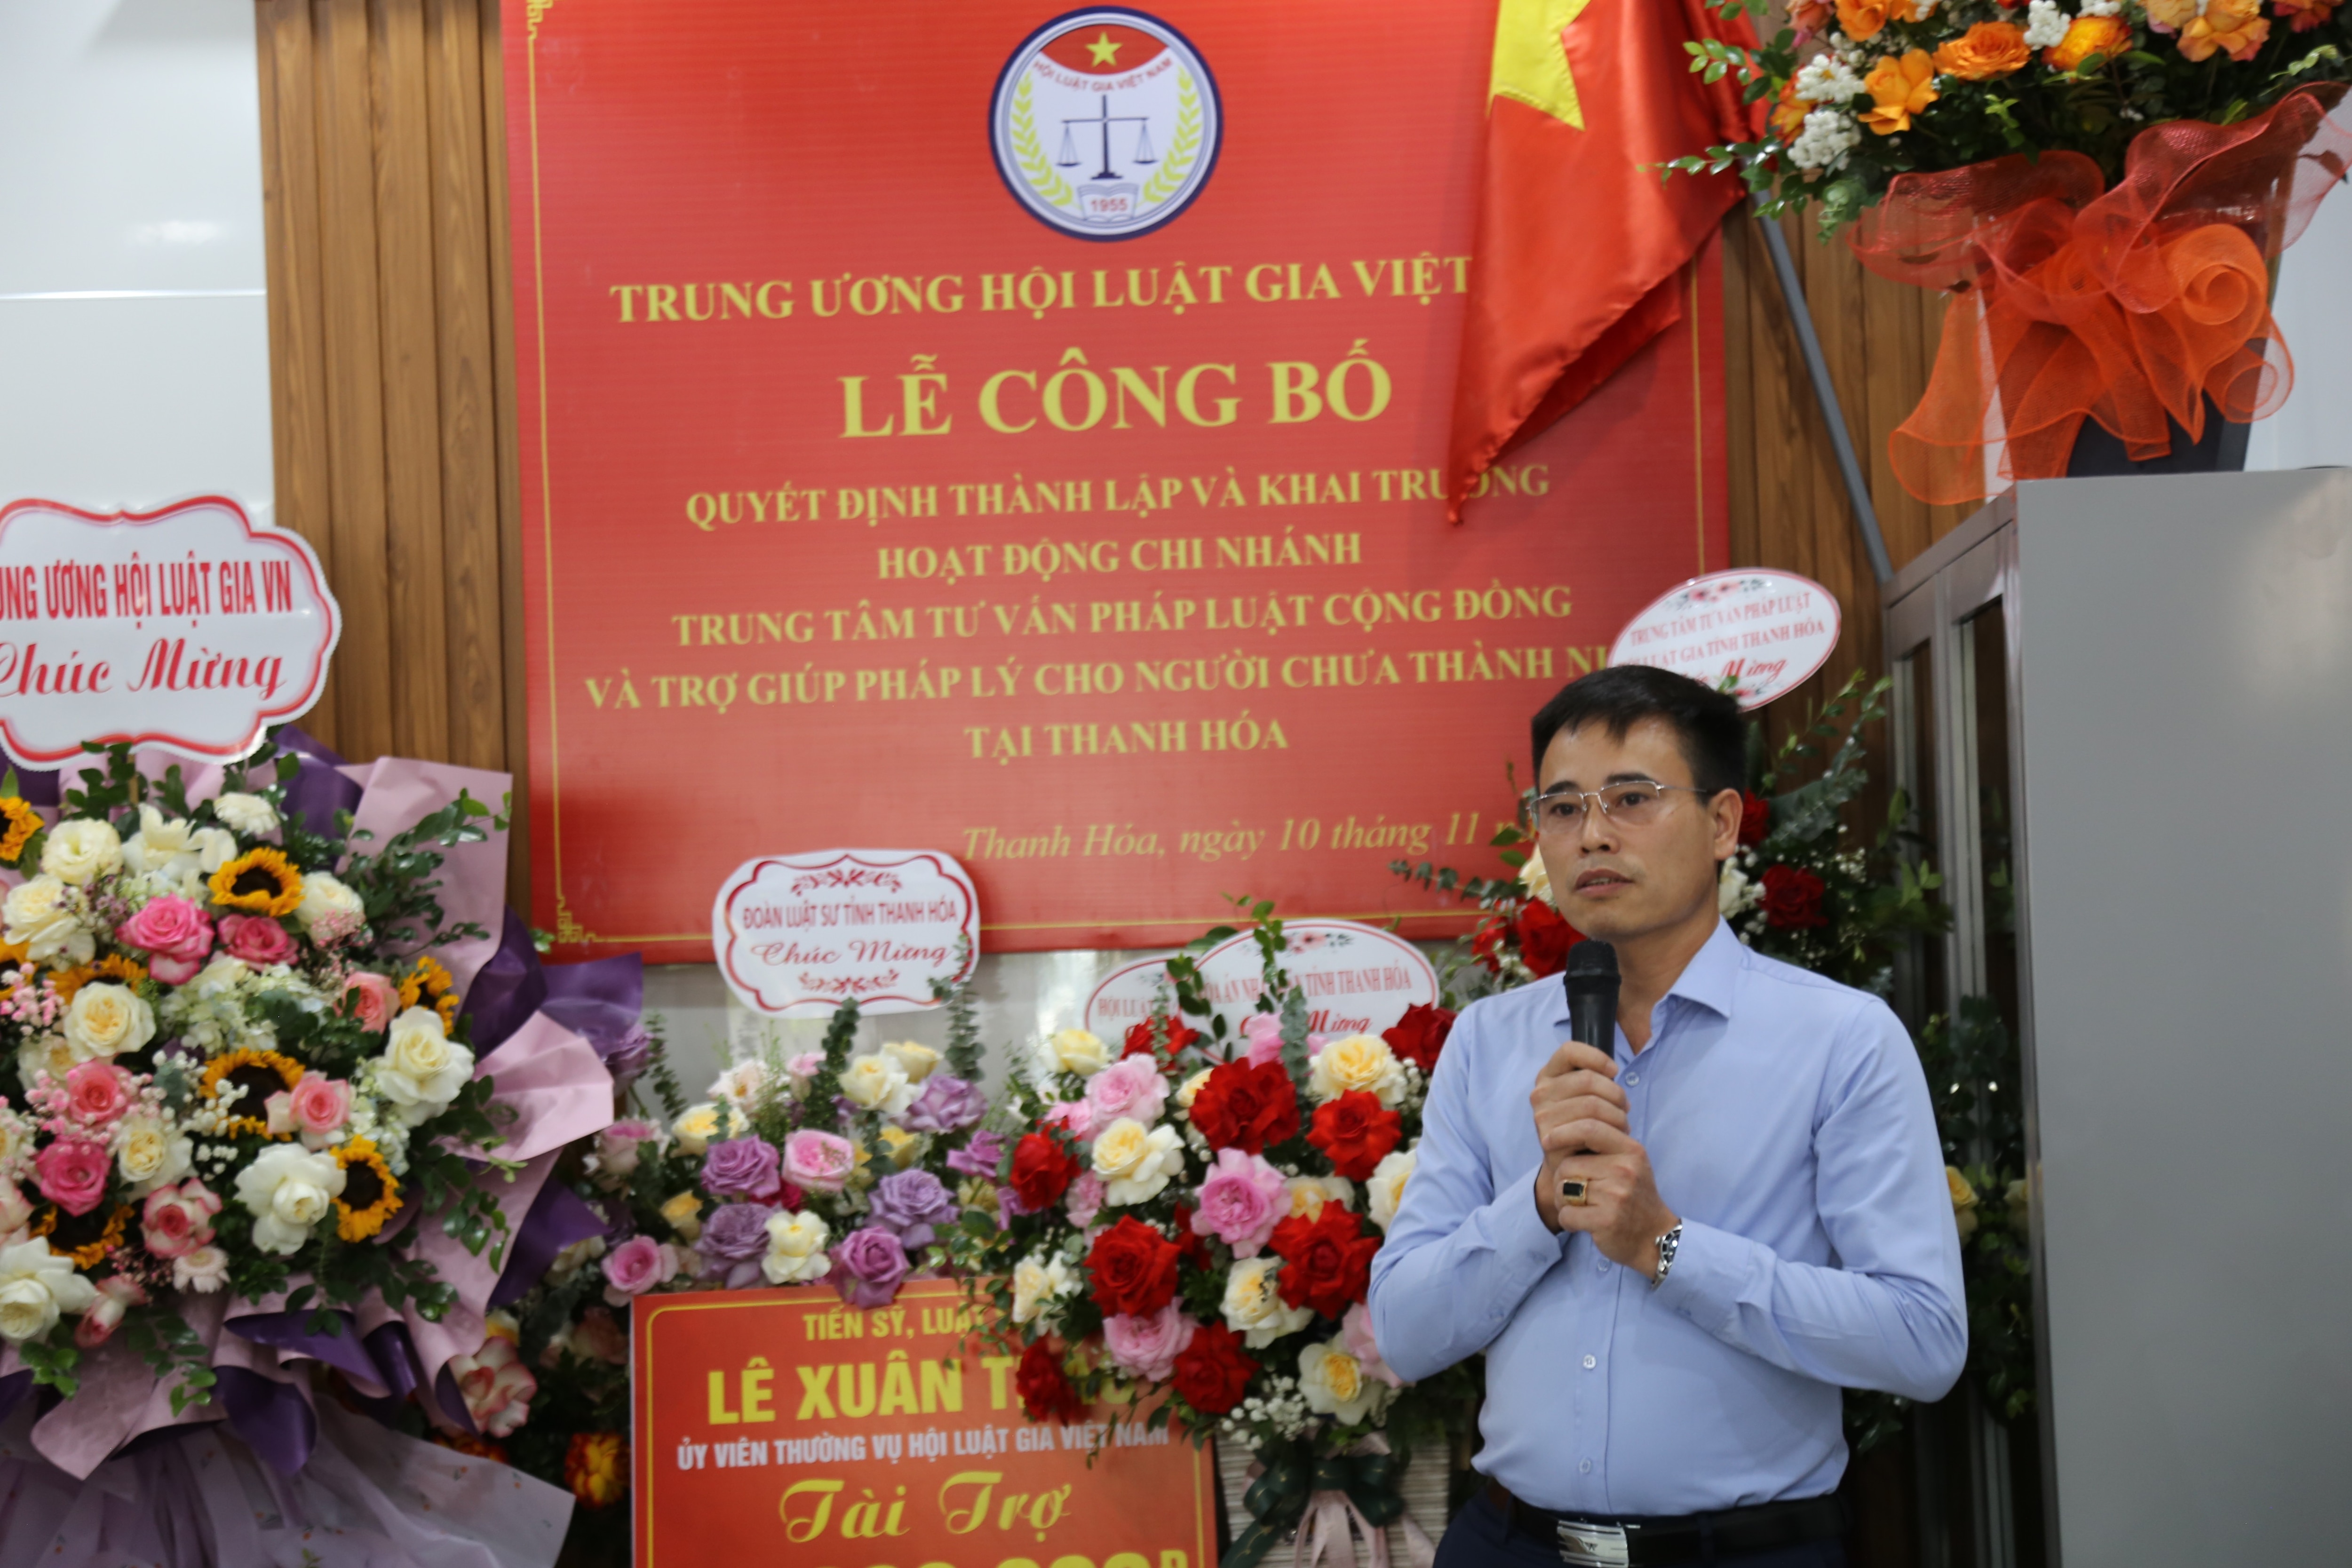 Sự kiện - Thành lập chi nhánh thứ 5 của Trung tâm Tư vấn pháp luật cho người chưa thành niên tại Thanh Hoá (Hình 2).